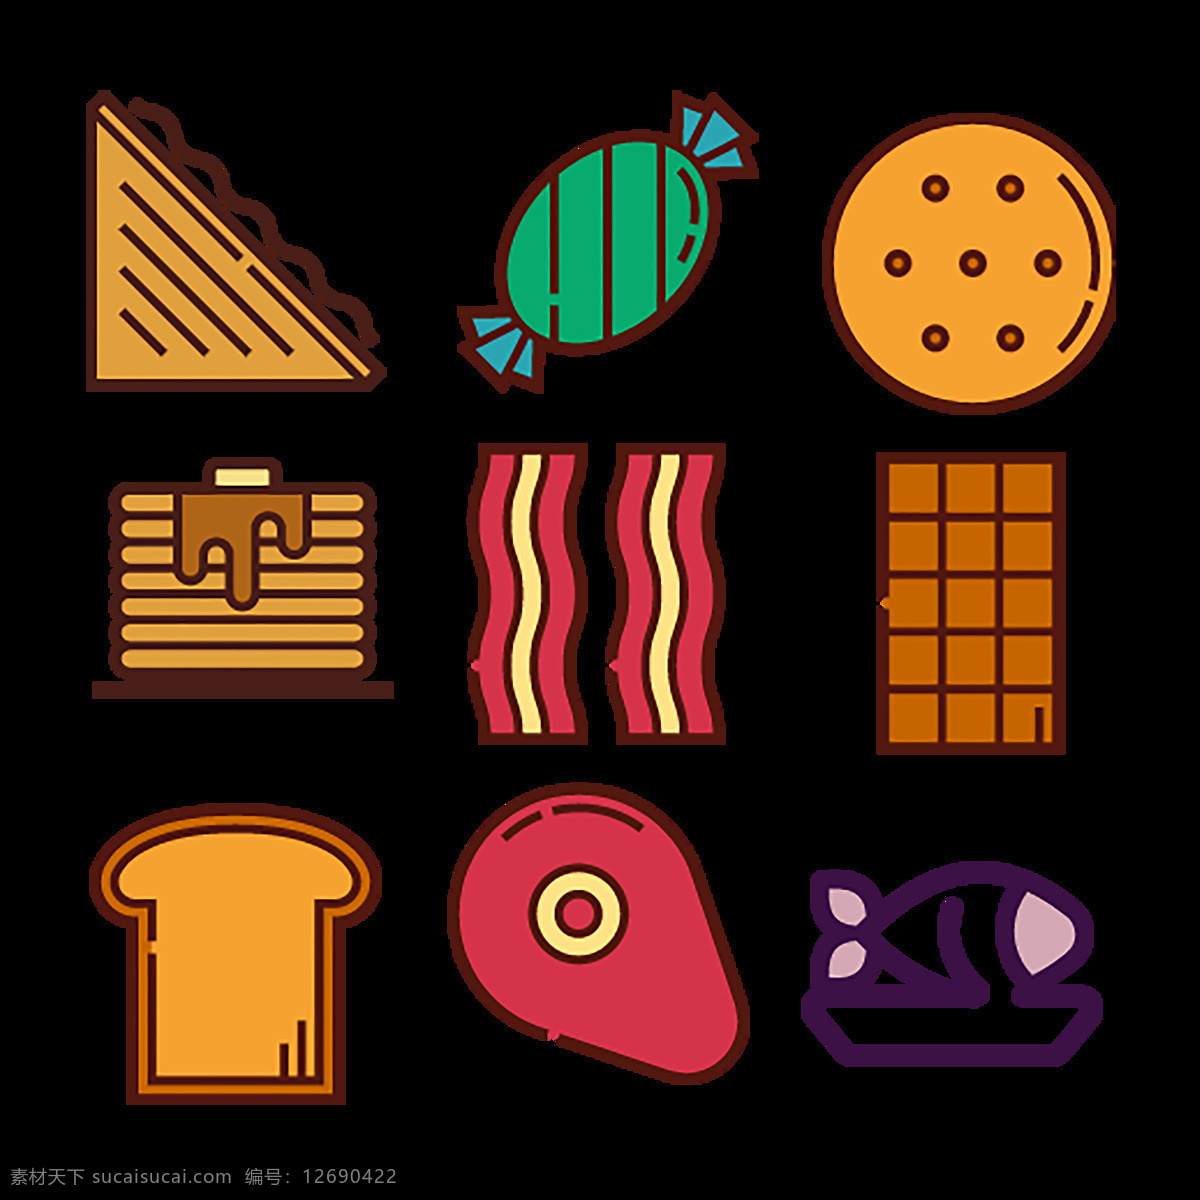 食物 食品 精美 icon 图标 表情图标 创意图标 水滴 图标设计 图标下载 汉堡 奶油 蛋糕 糖 薯条 牛奶 热狗 披萨 奶酪